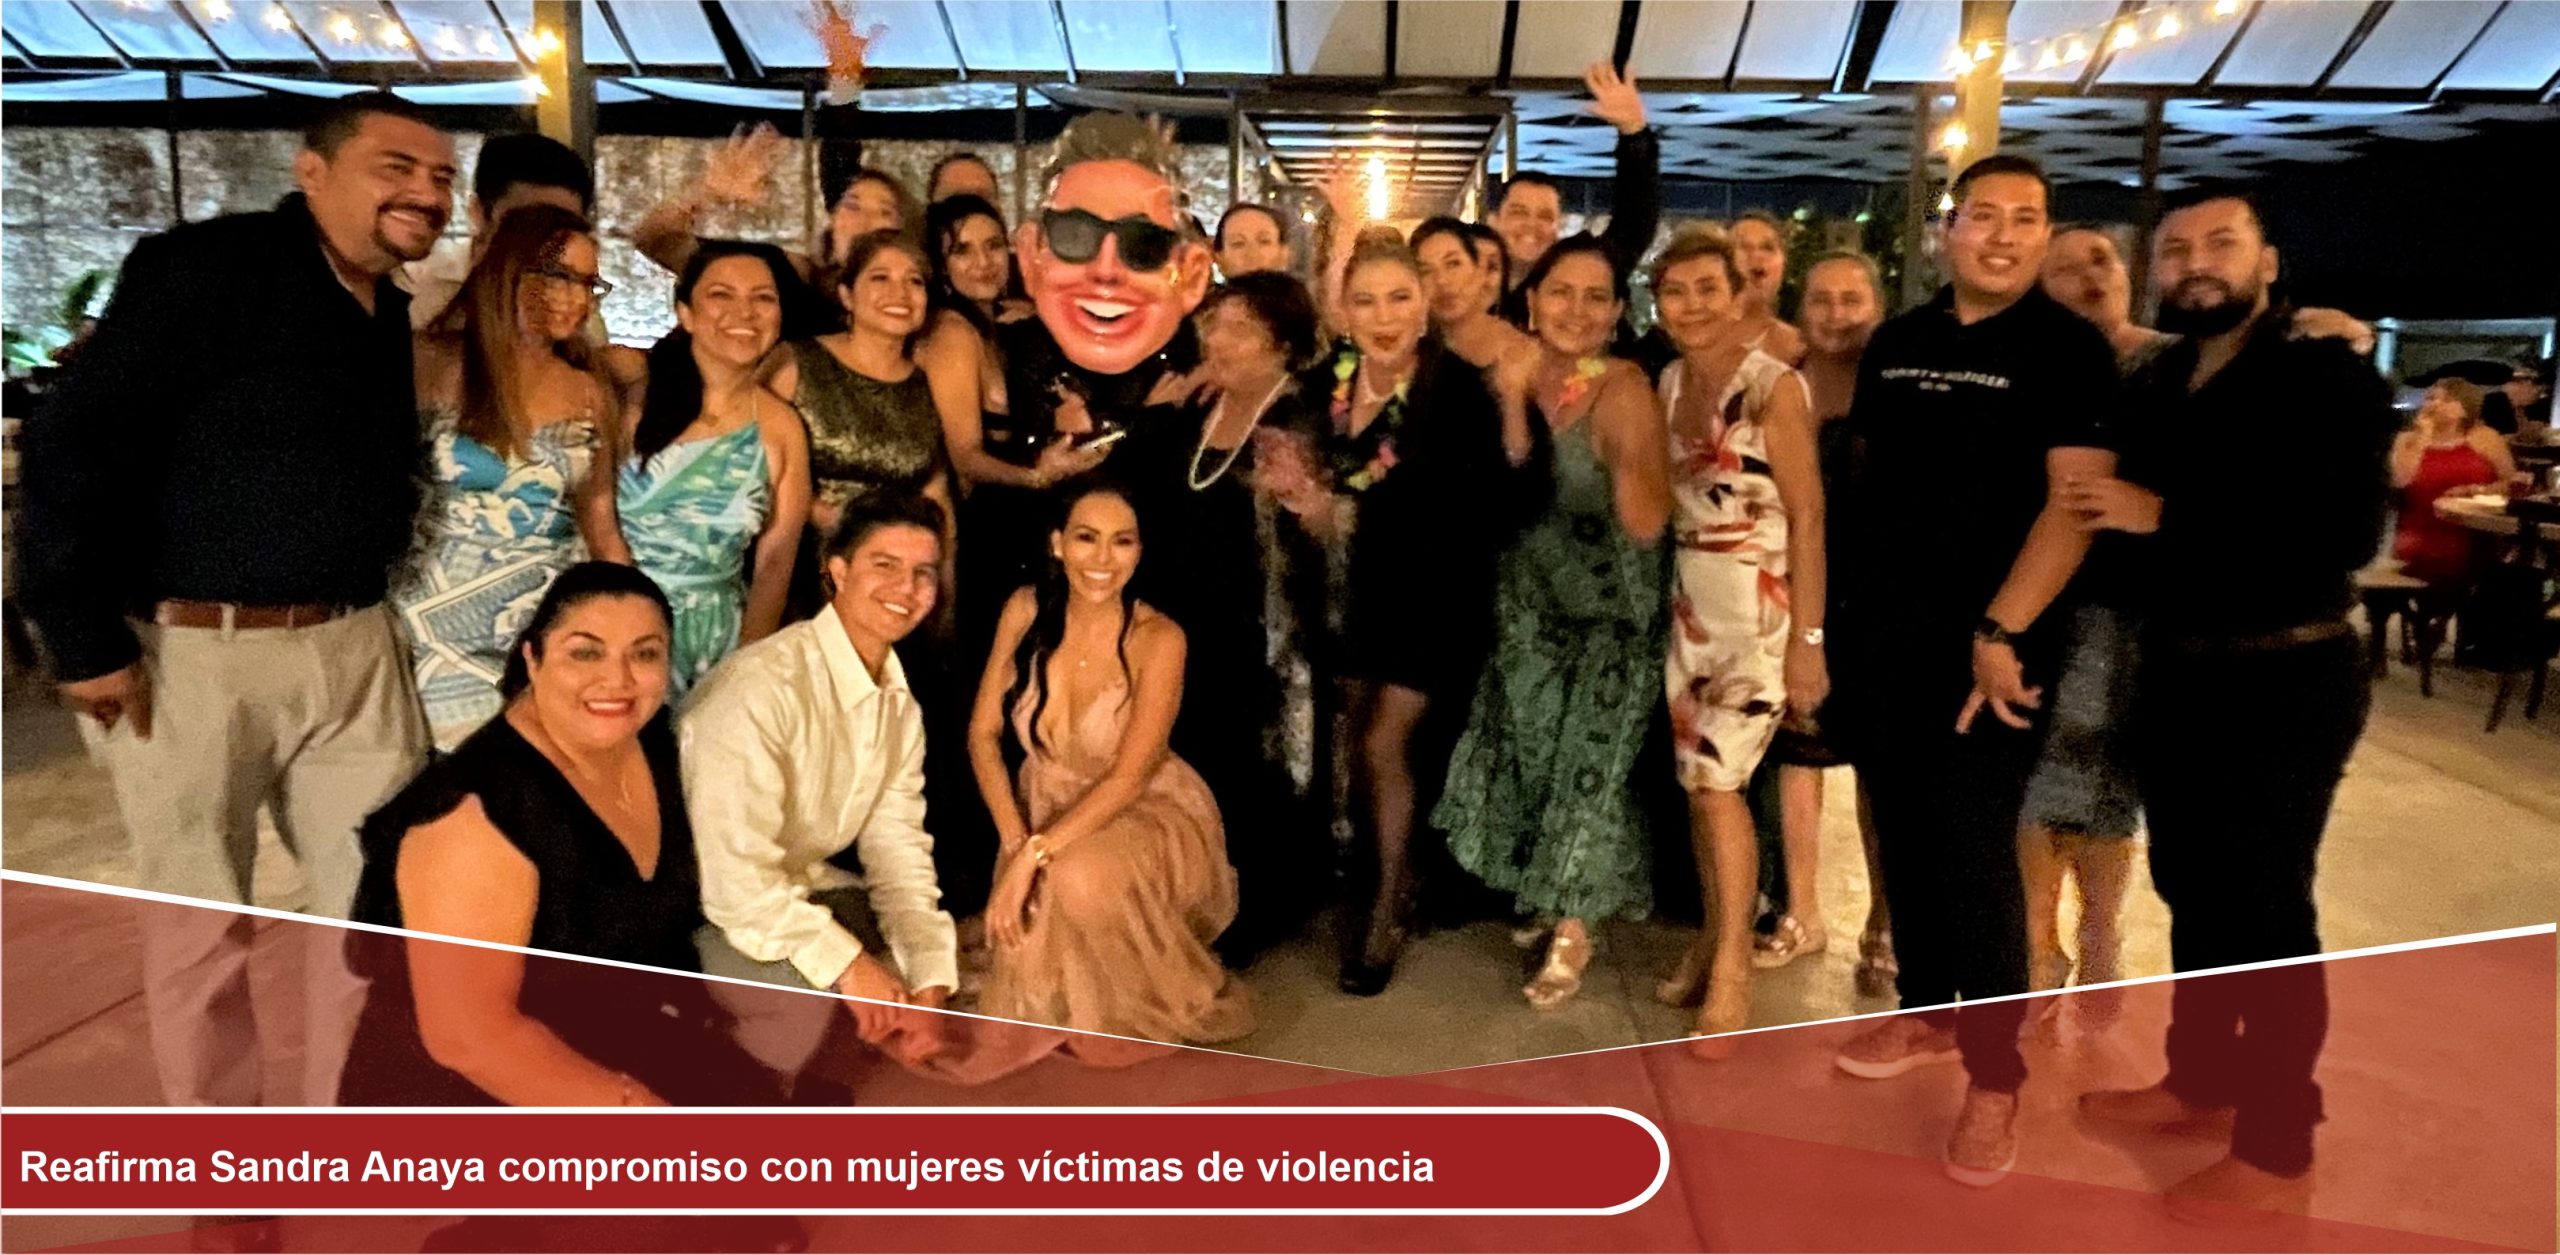 Reafirma Sandra Anaya compromiso con mujeres víctimas de violencia